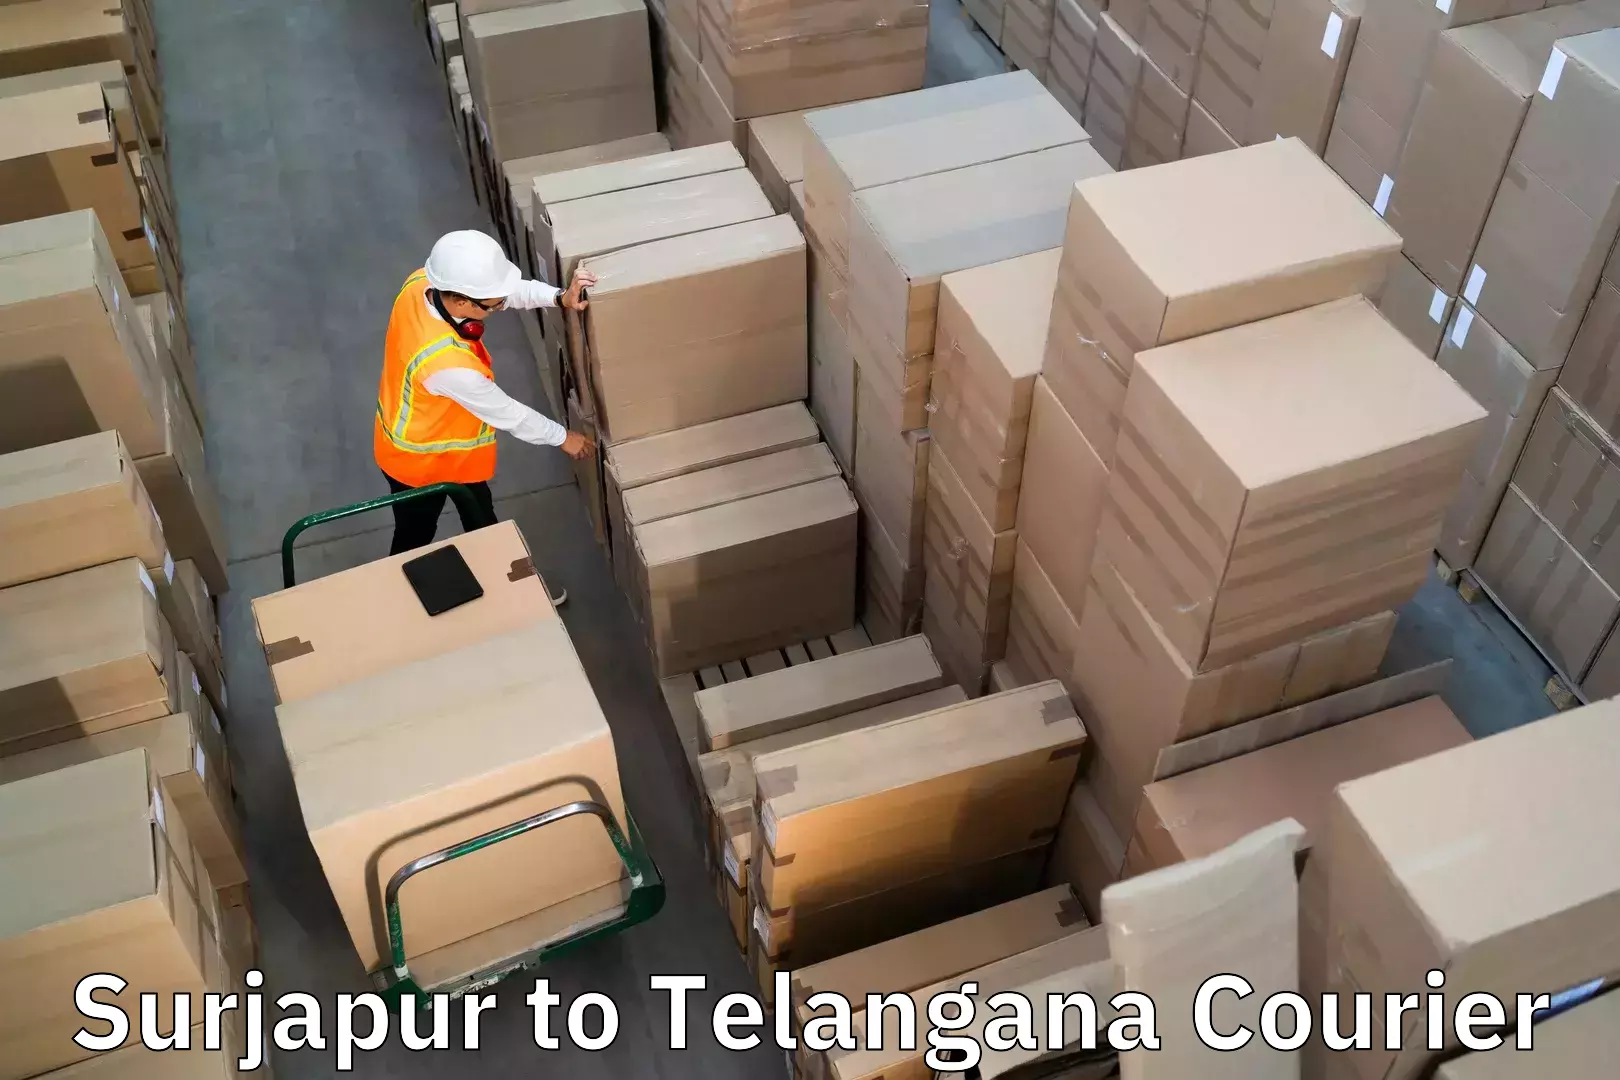 Urgent luggage shipment Surjapur to Rayaparthi